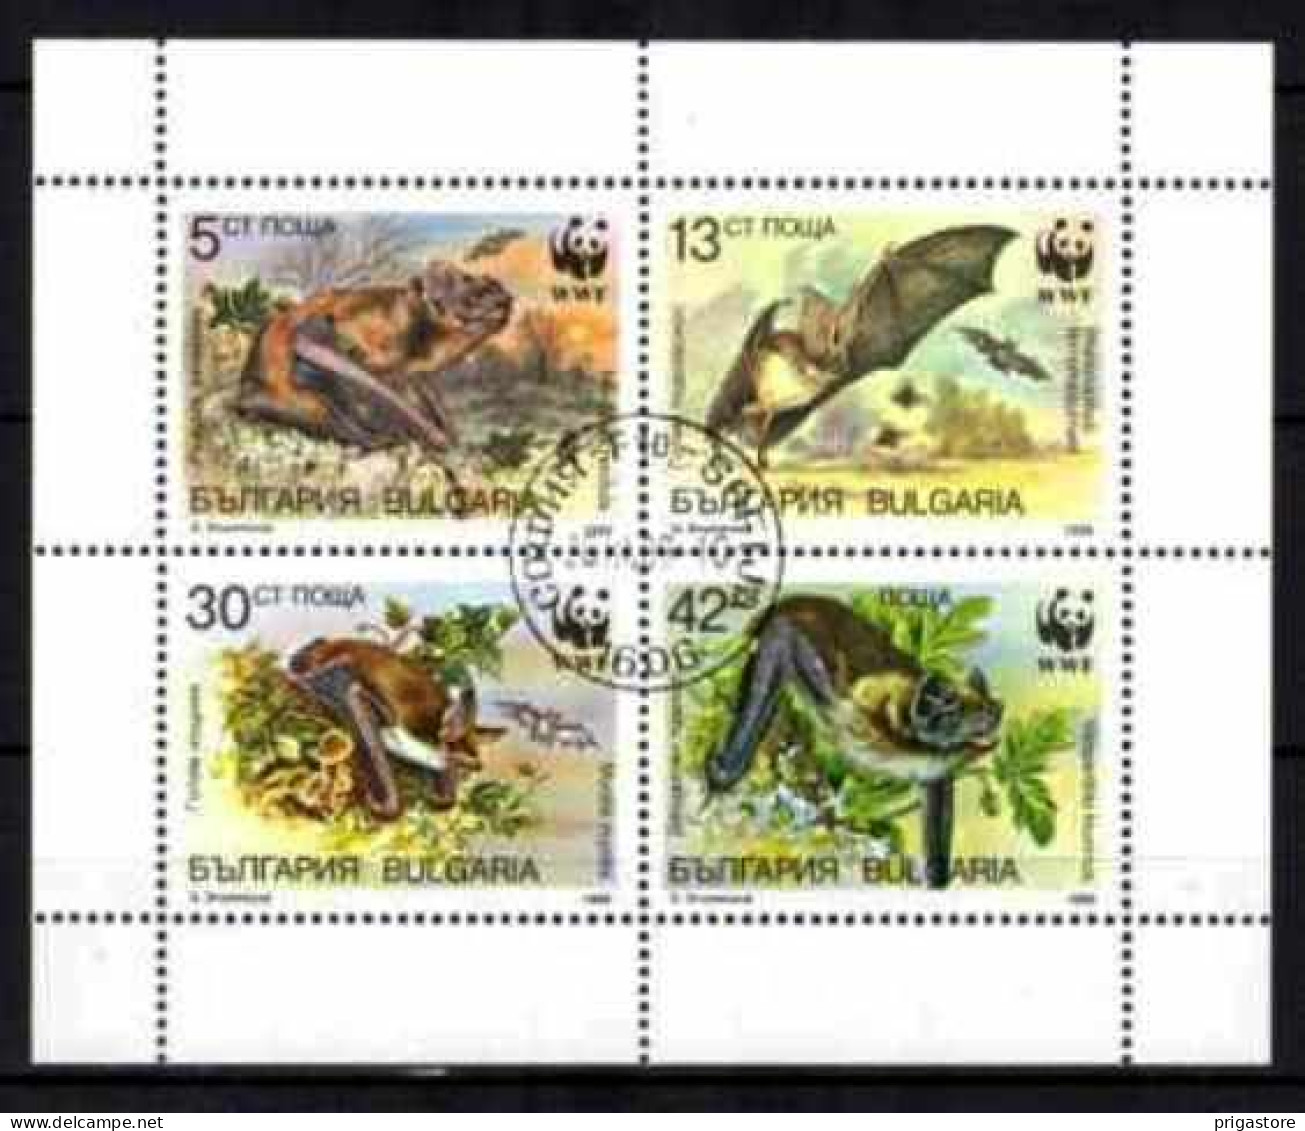 Animaux Chauve-Souris Bulgarie 1989 (55) Yvert N° 3231 à 3234 Oblitéré Used - Chauve-souris